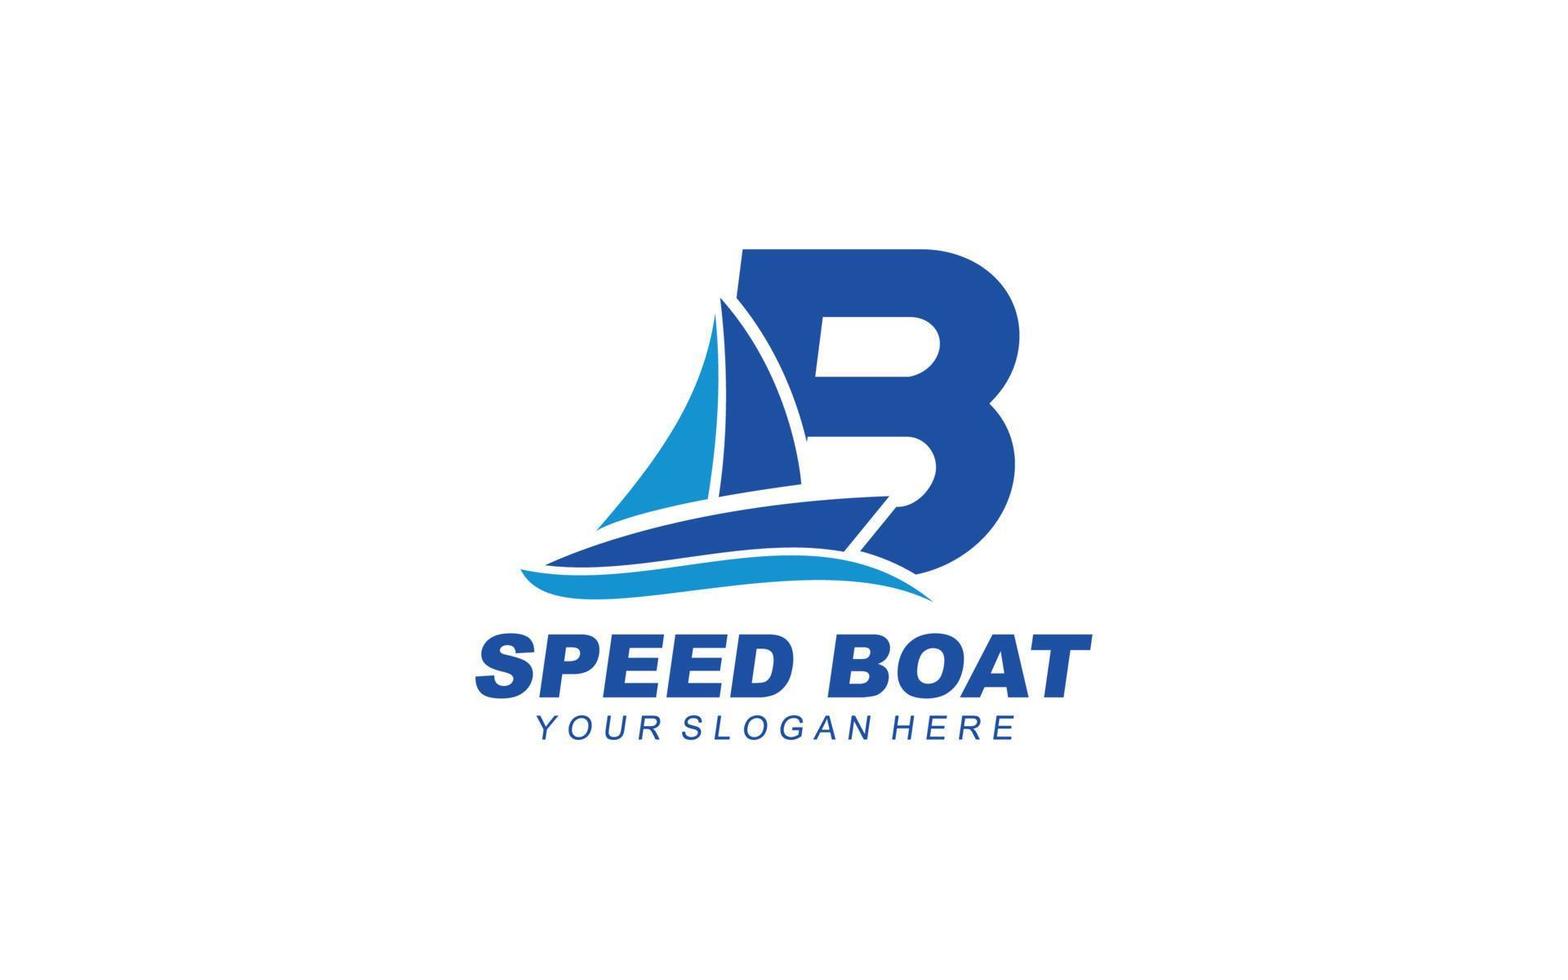 b båt logotyp design inspiration. vektor brev mall design för varumärke.